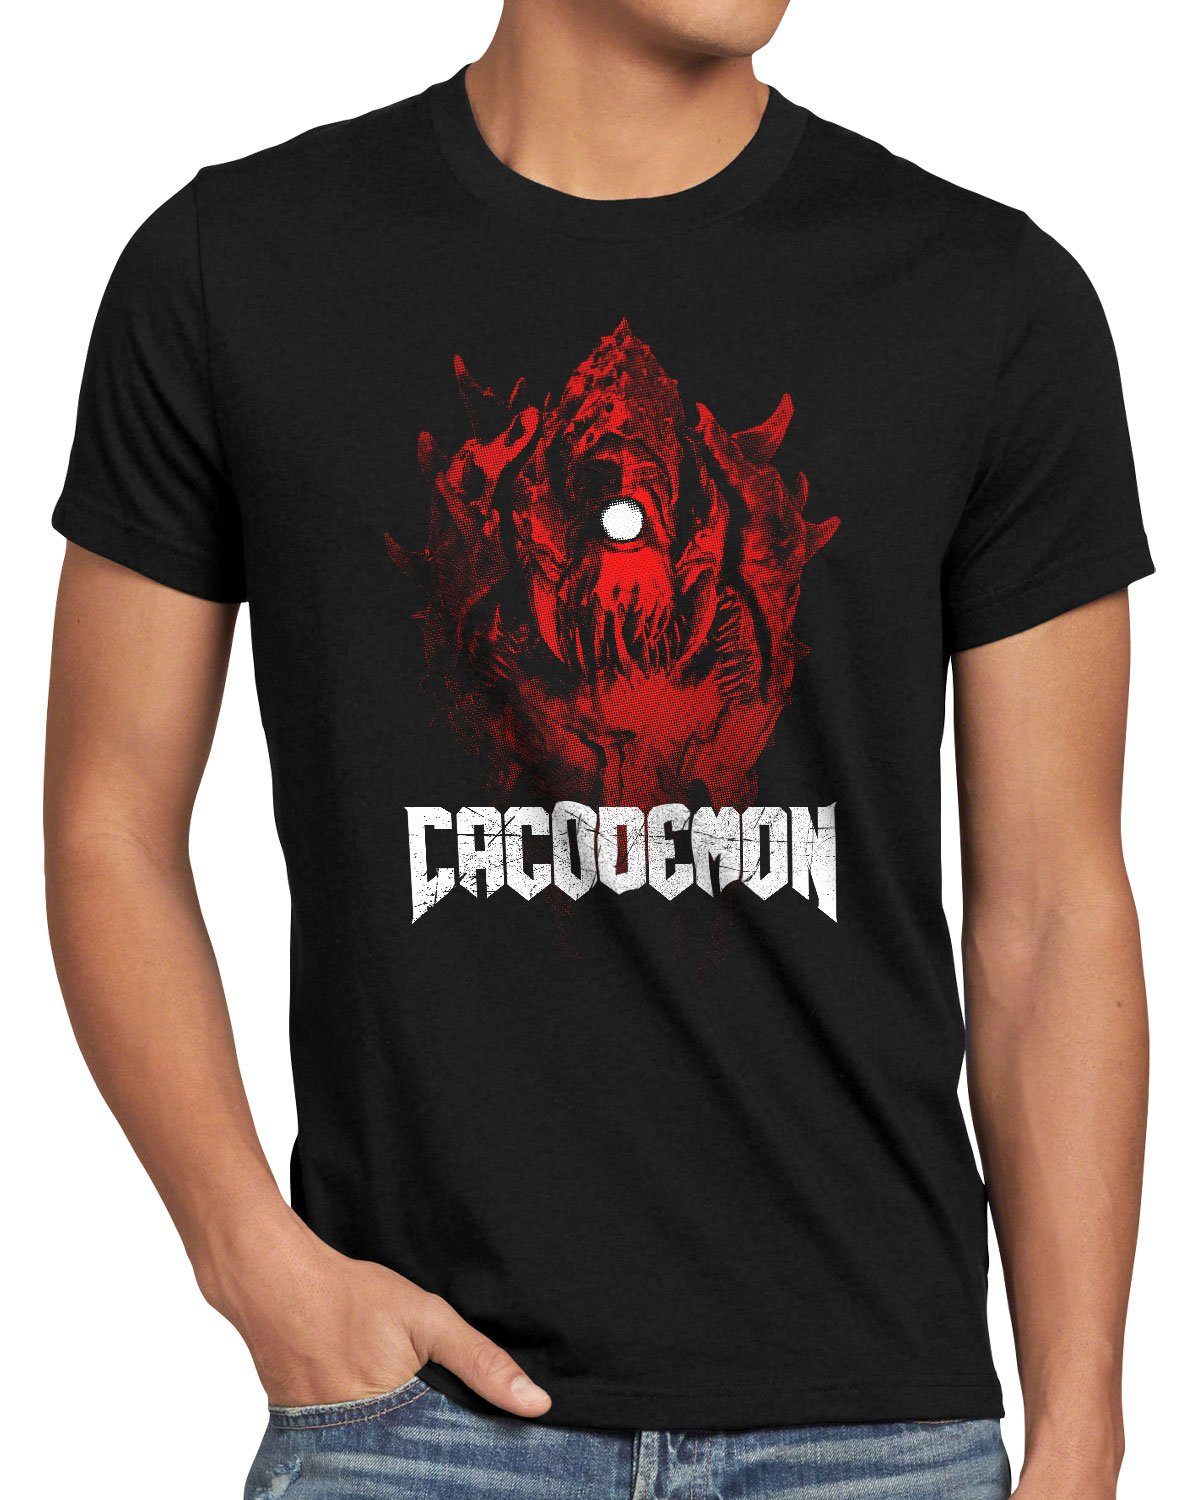 quake doom Cacodemon pc Print-Shirt ego style3 shooter multiplayer Herren T-Shirt